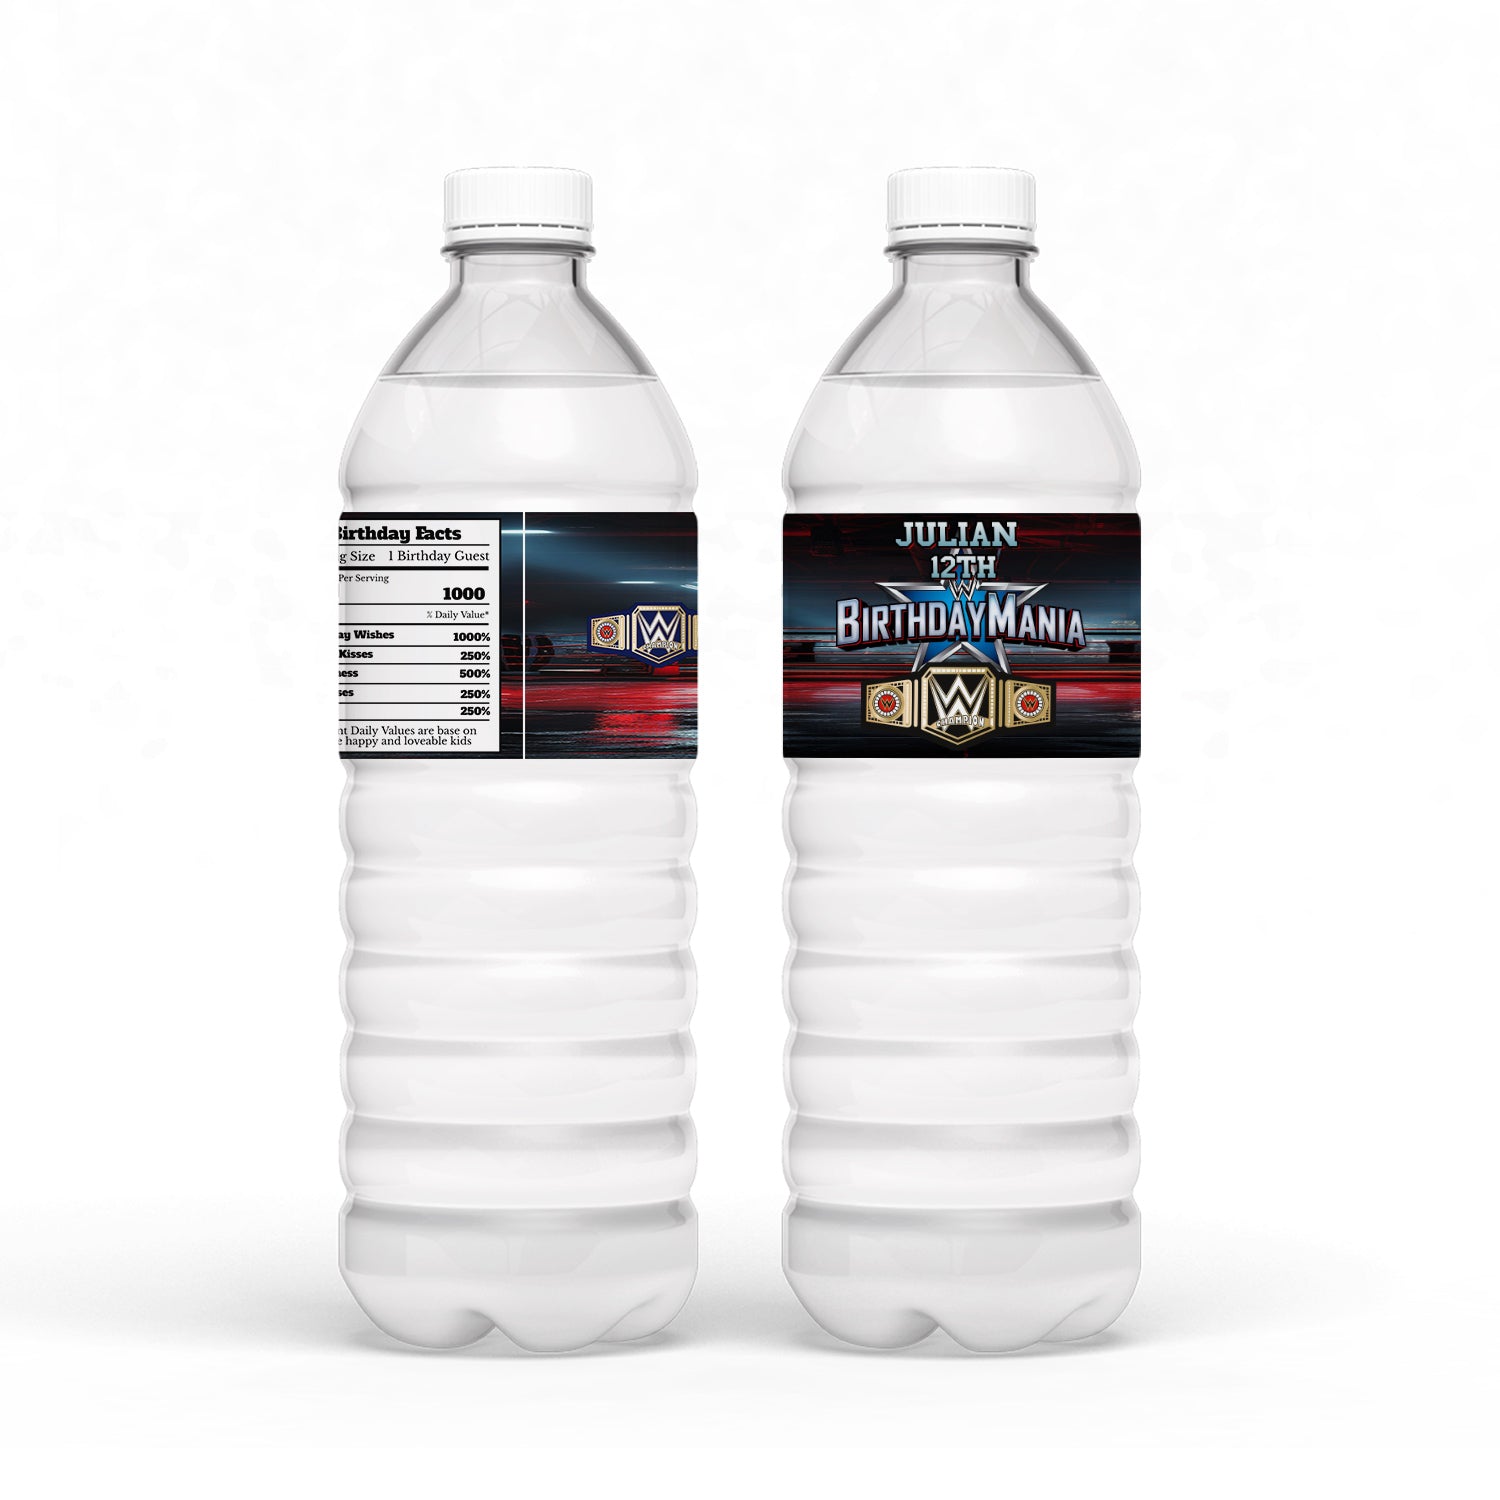 WWE themed water bottle label